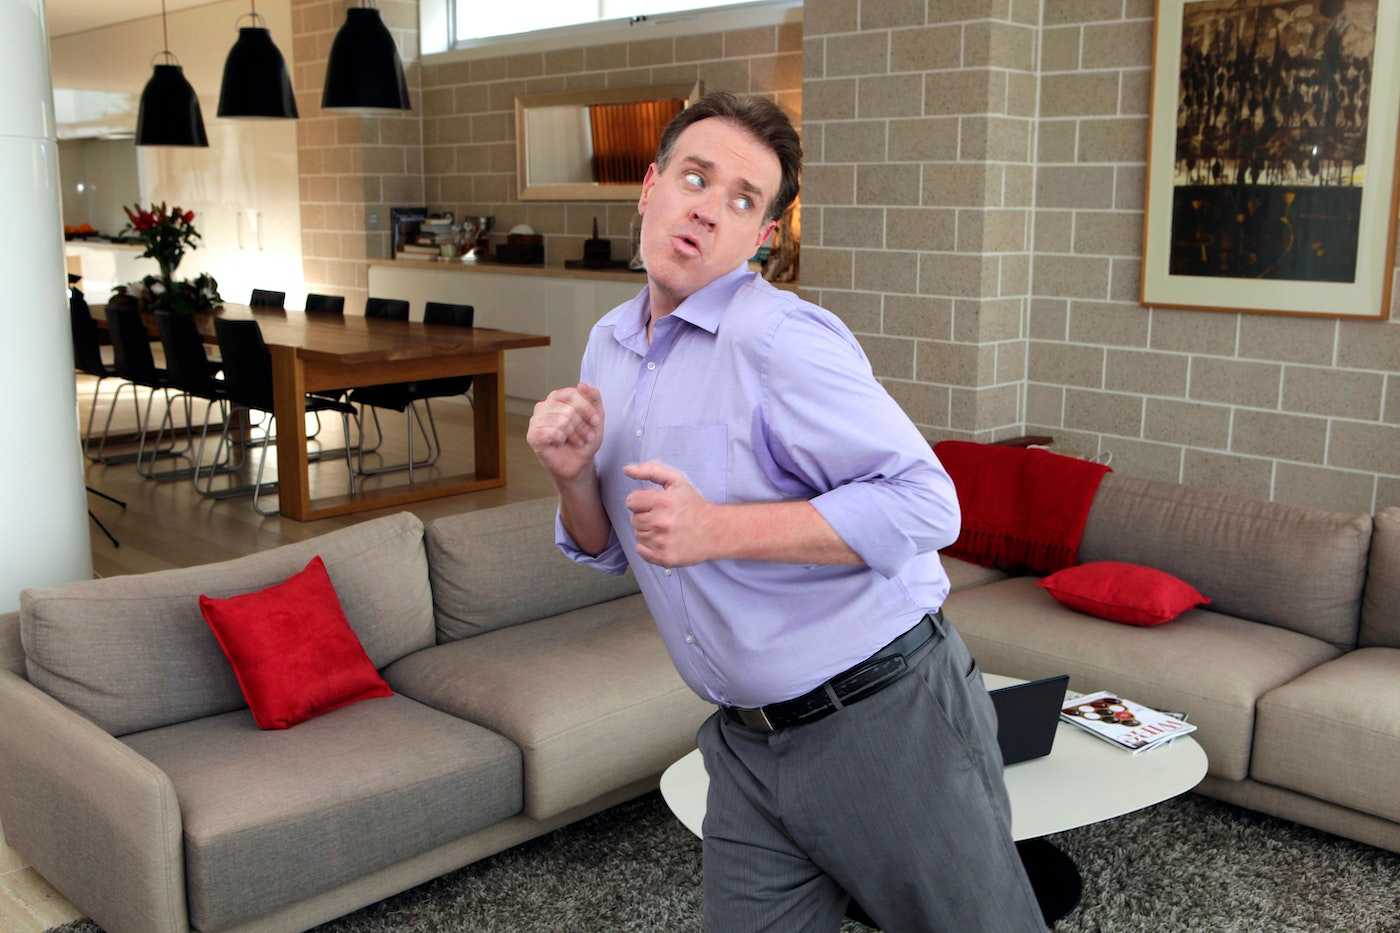 Man dancing in living room